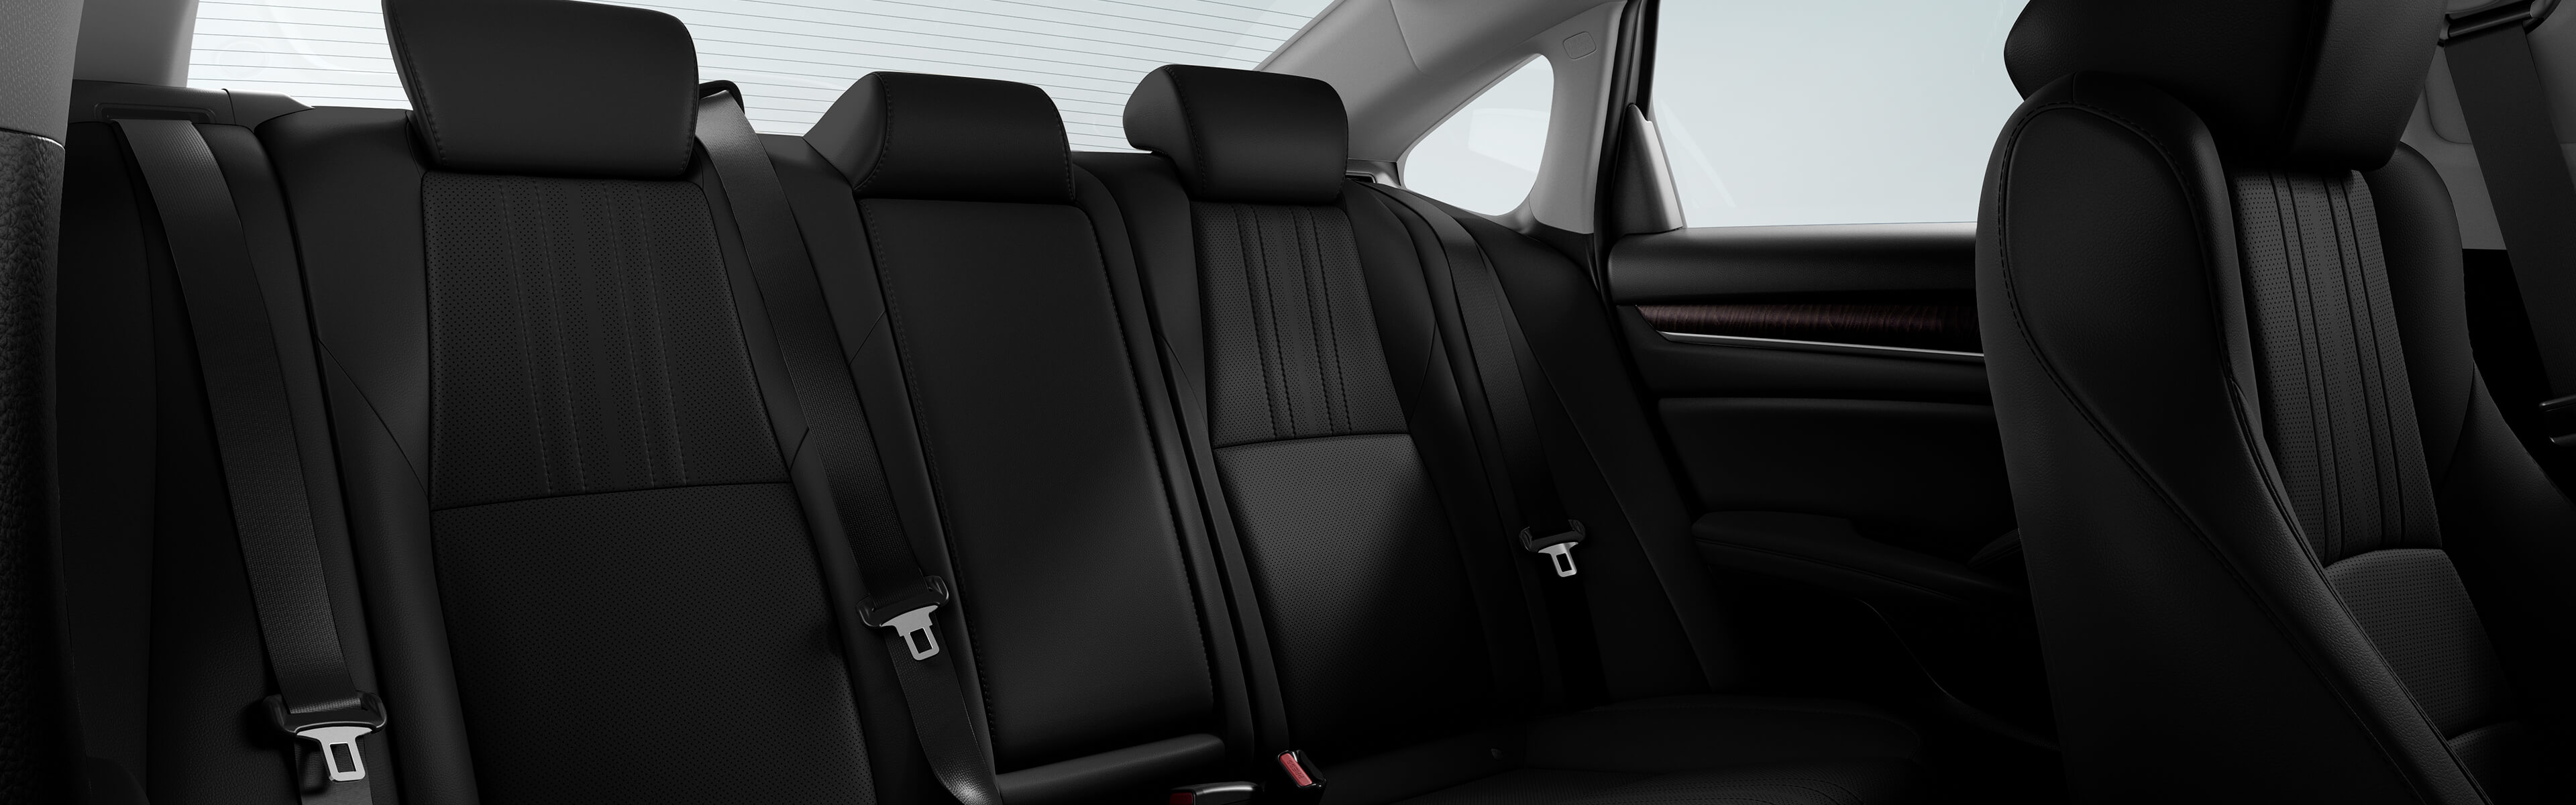 Image des sièges garnis de cuir de l’Accord Hybrid 2021